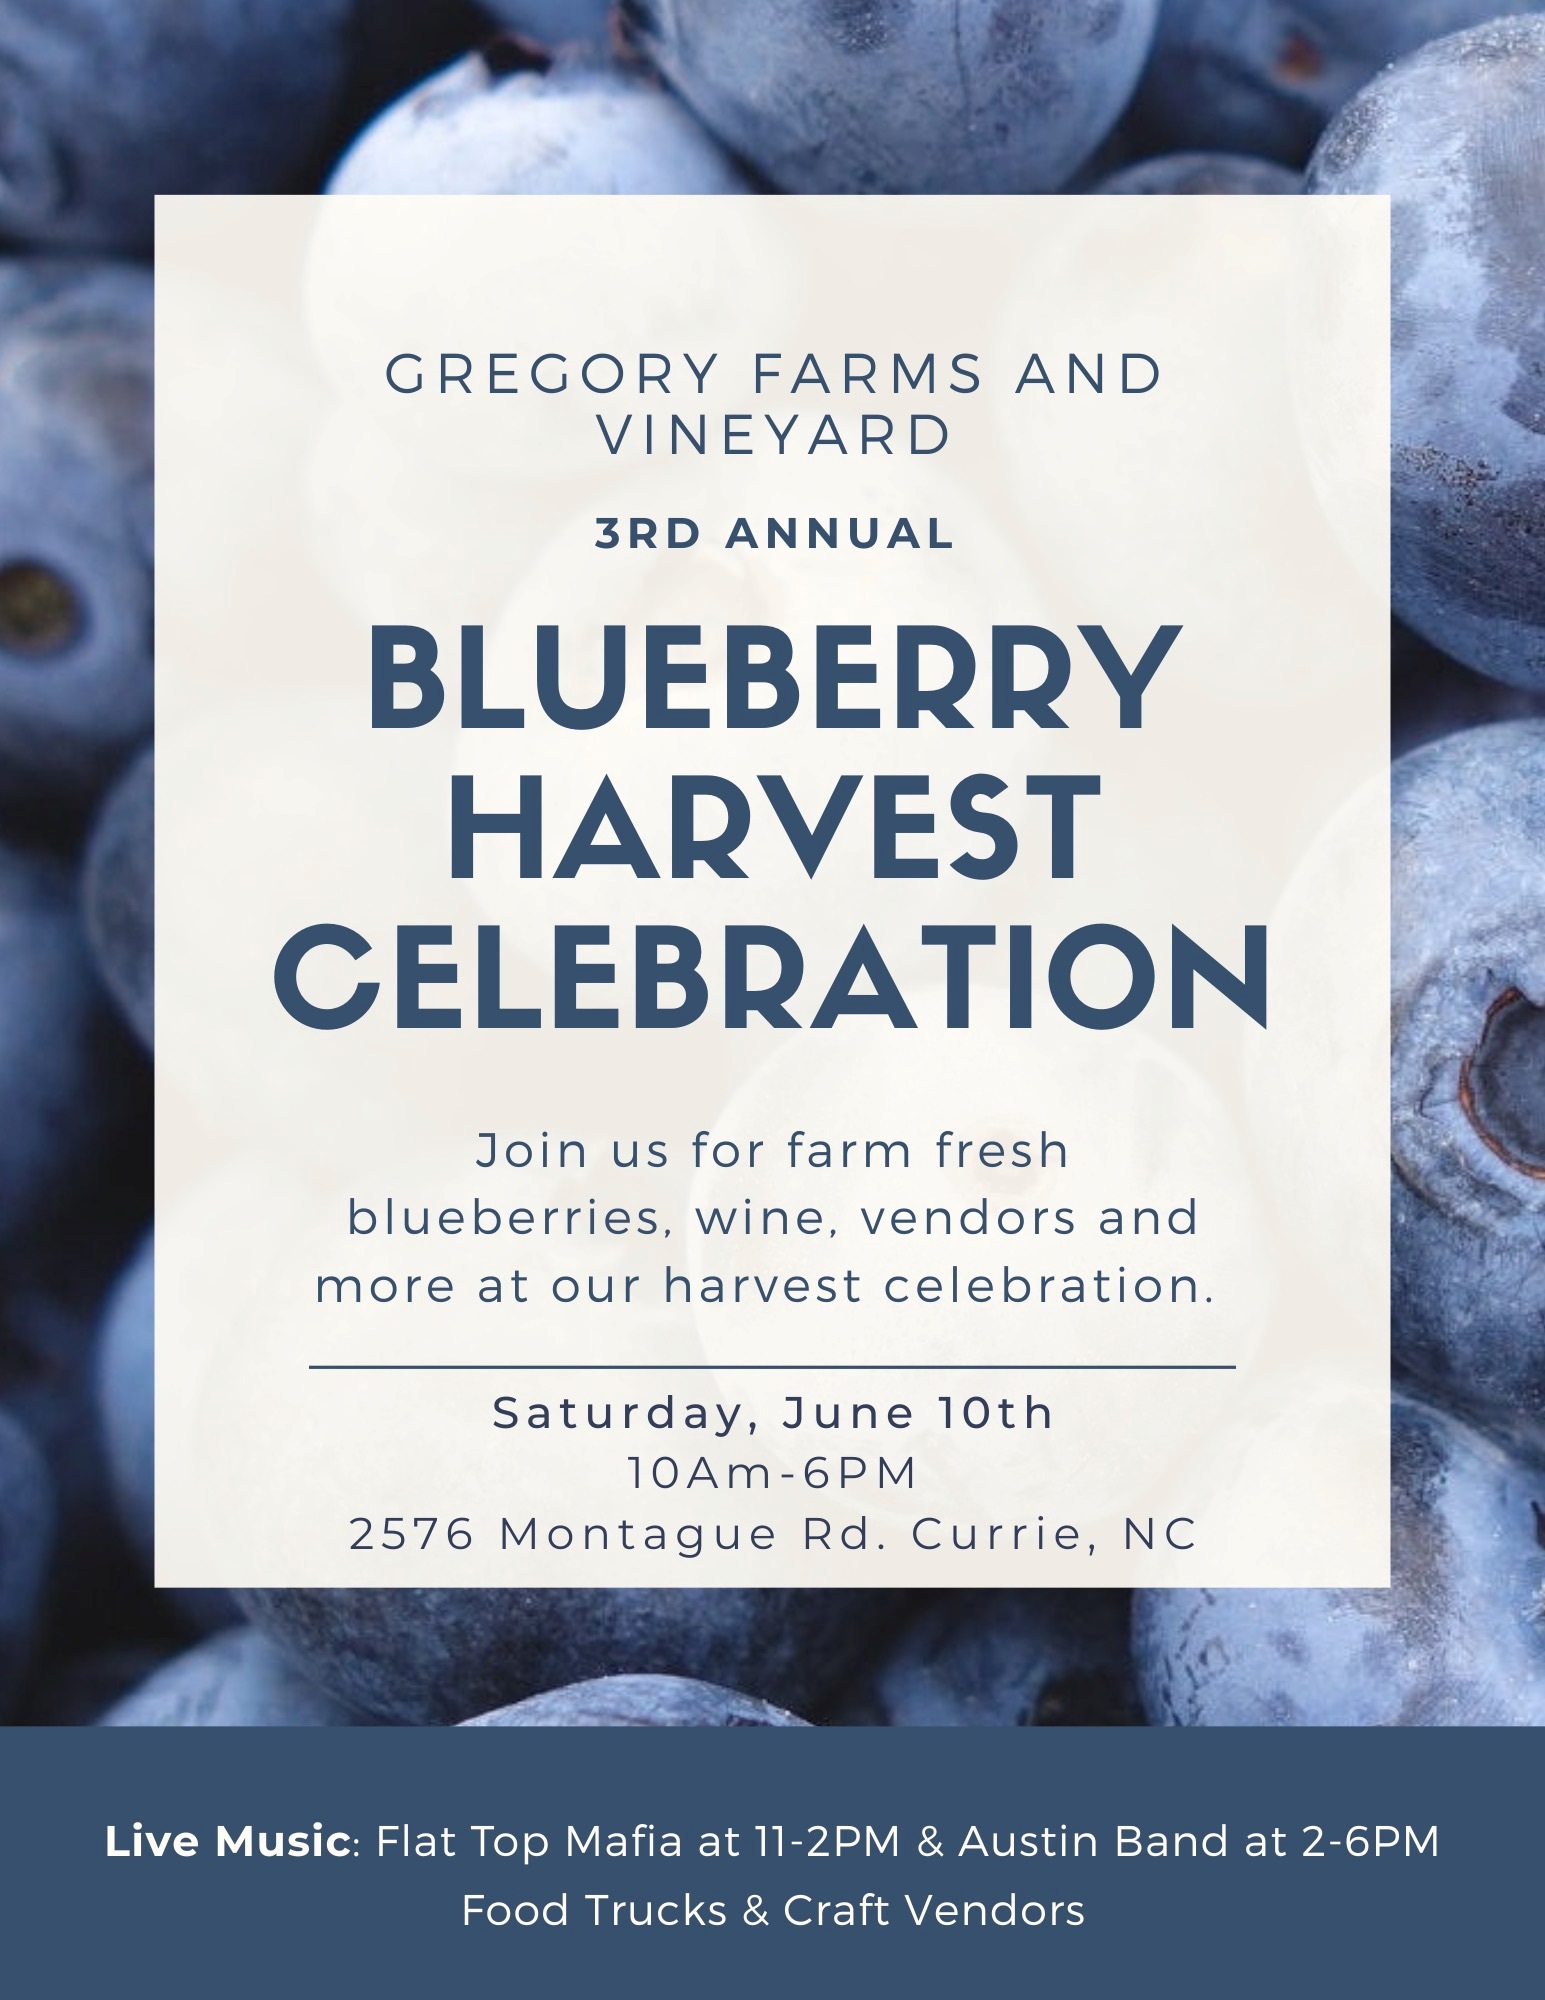 Gregory Farms Blueberry Harvest Celebration